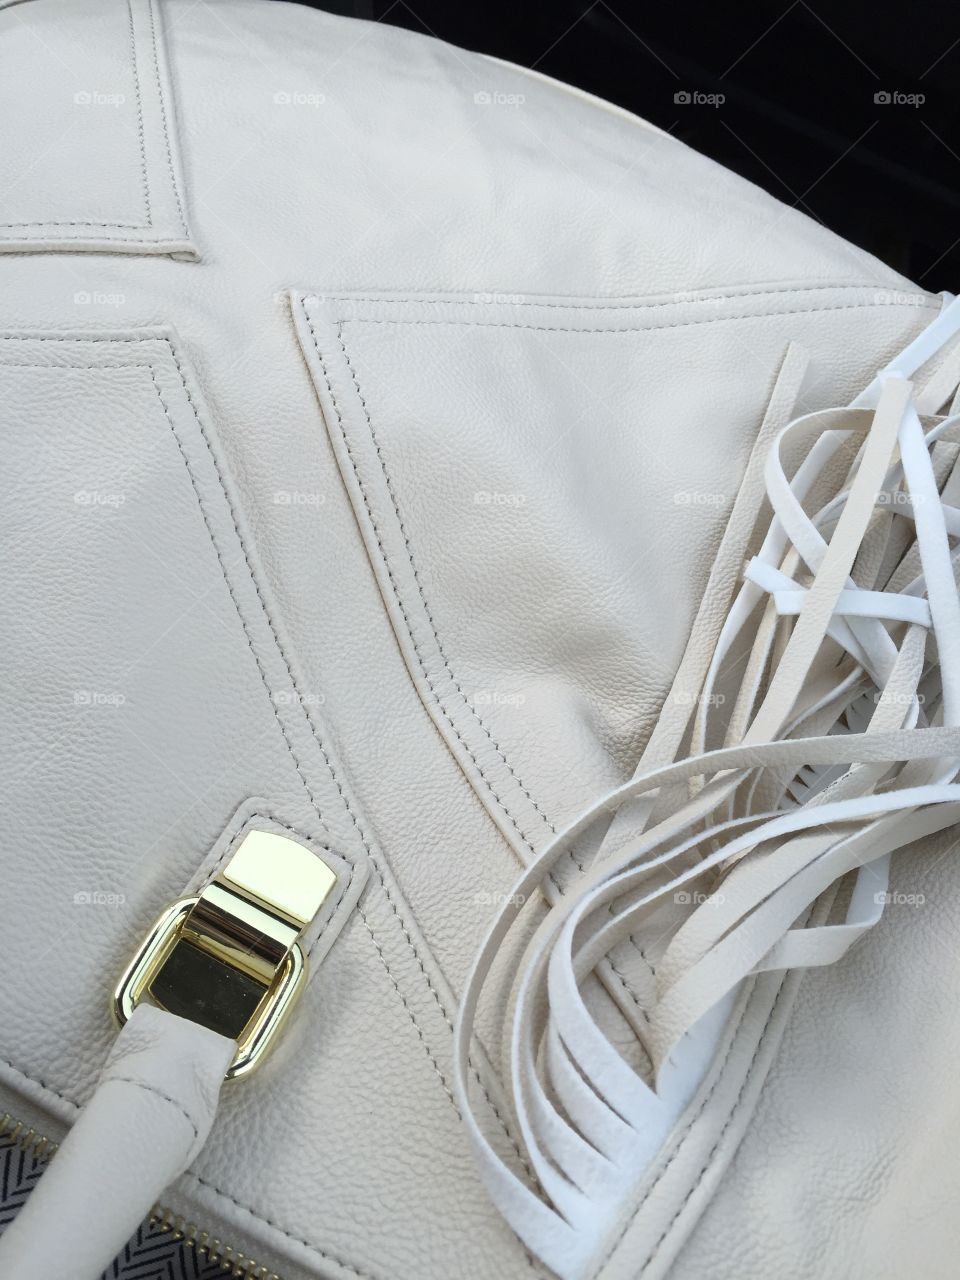 Fringe handbag closeup details. Ivory Handbag closeup of hardware and fringe details. 